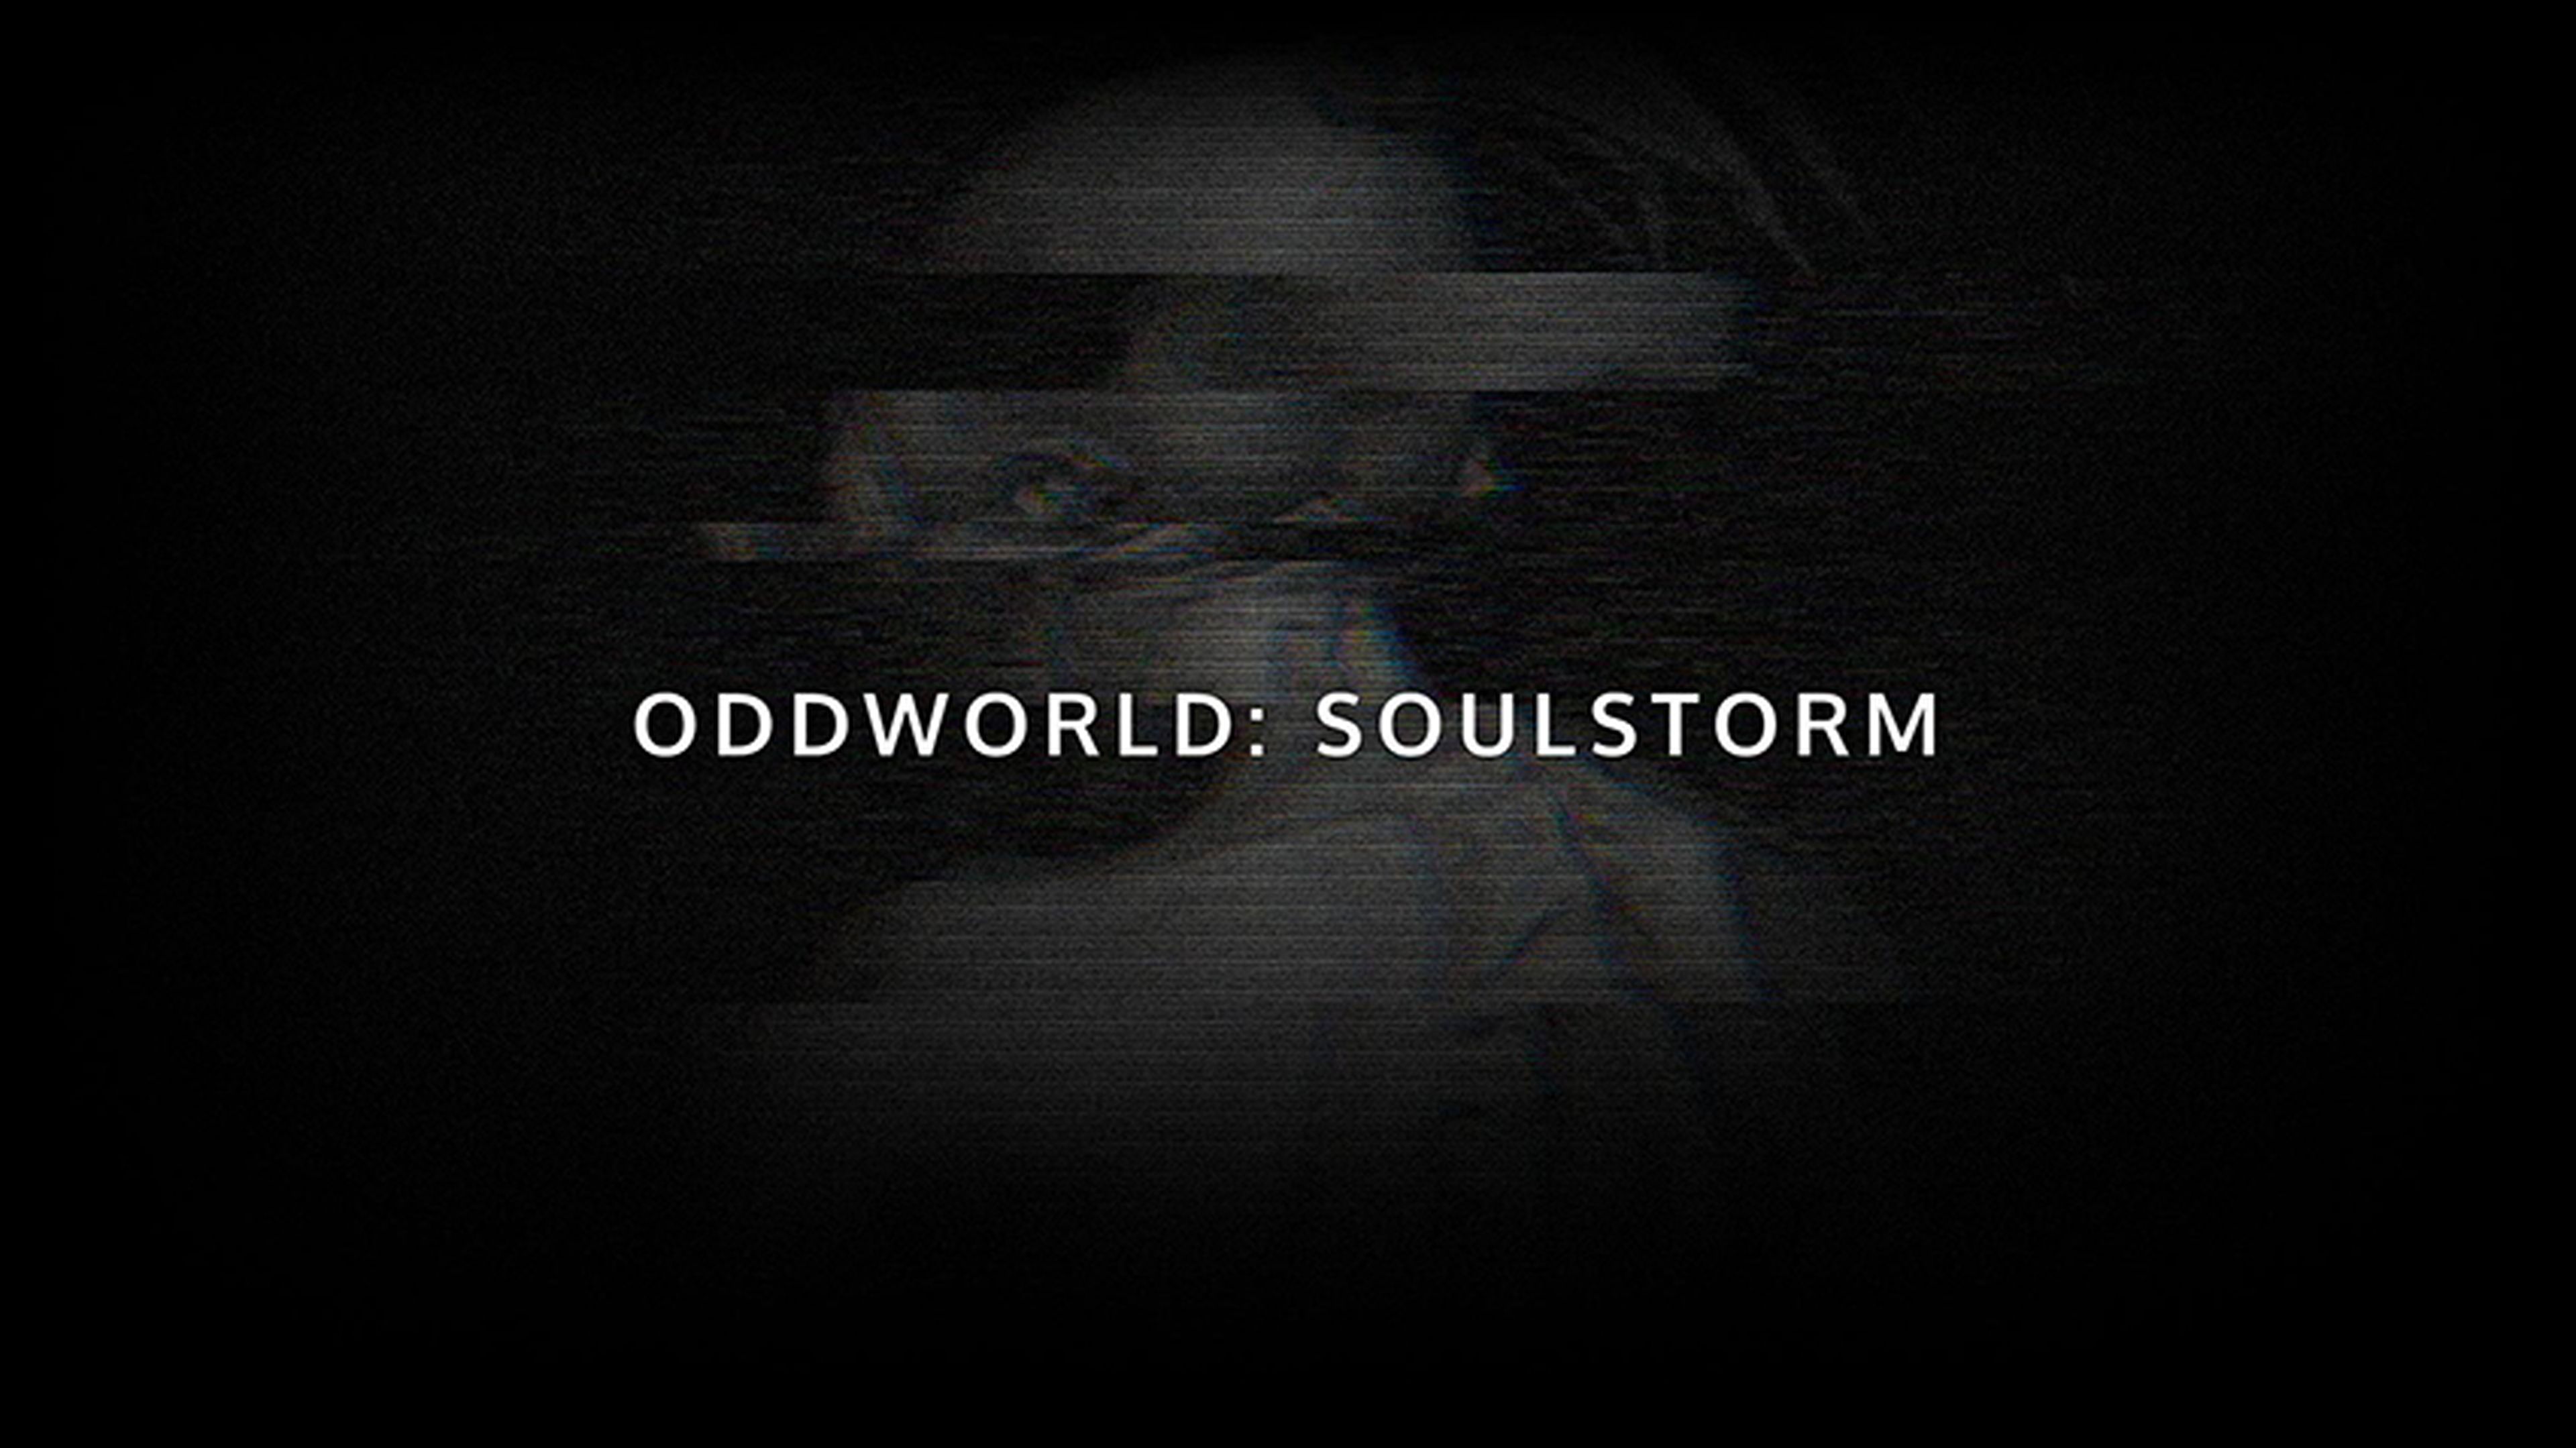 Oddworld: Soulstorm, anunciado el nuevo juego de Abe